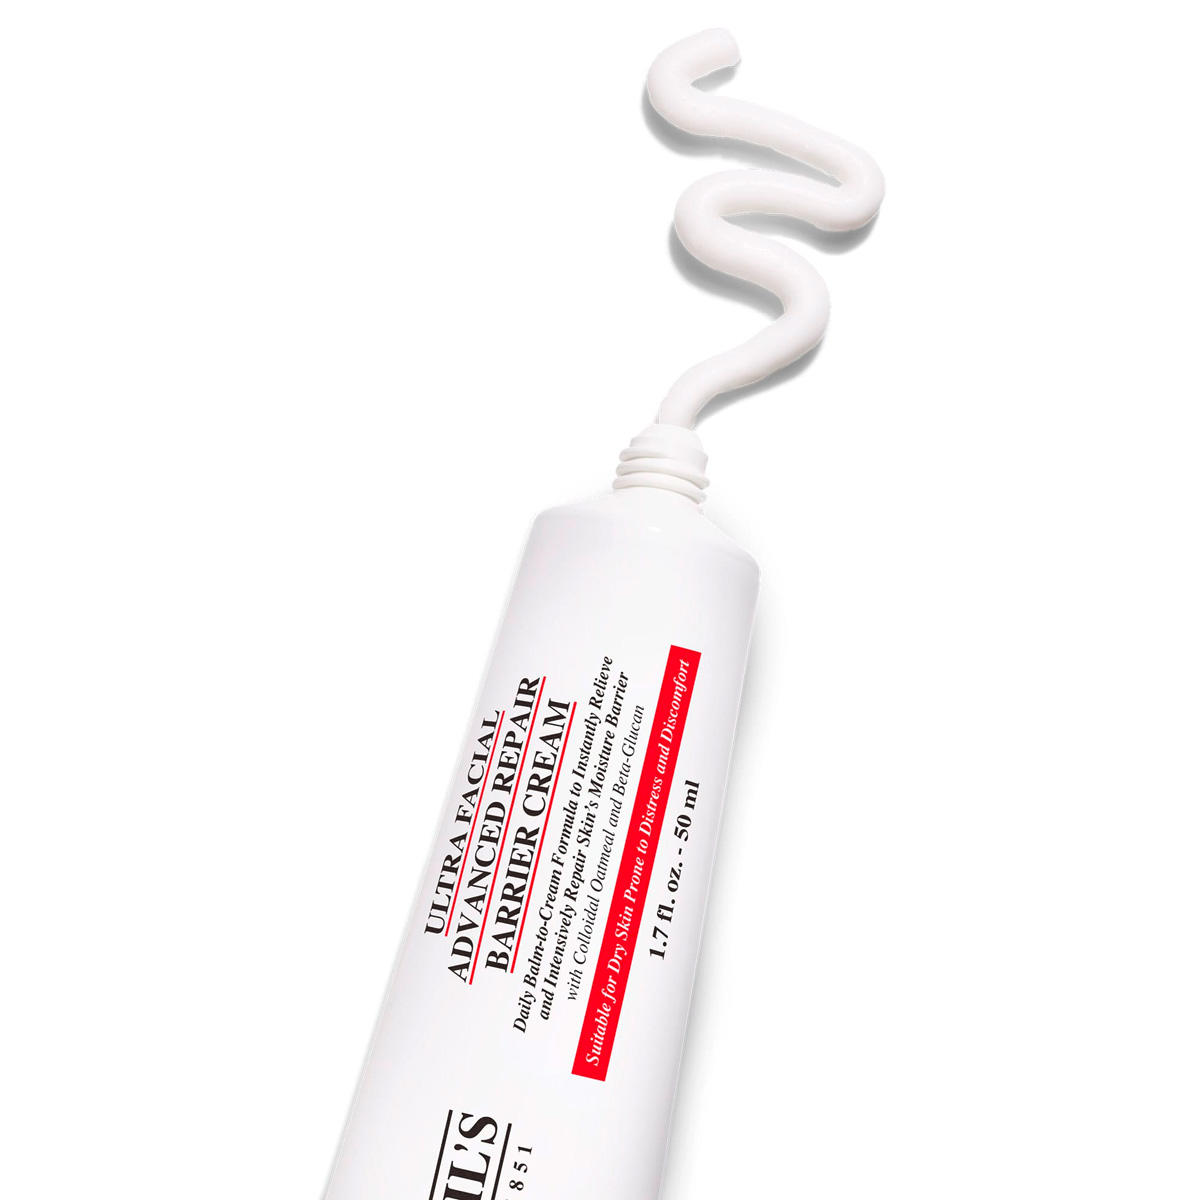 Kiehl's Ultra Facial Advanced Repair Barrier Cream 50 ml - 2